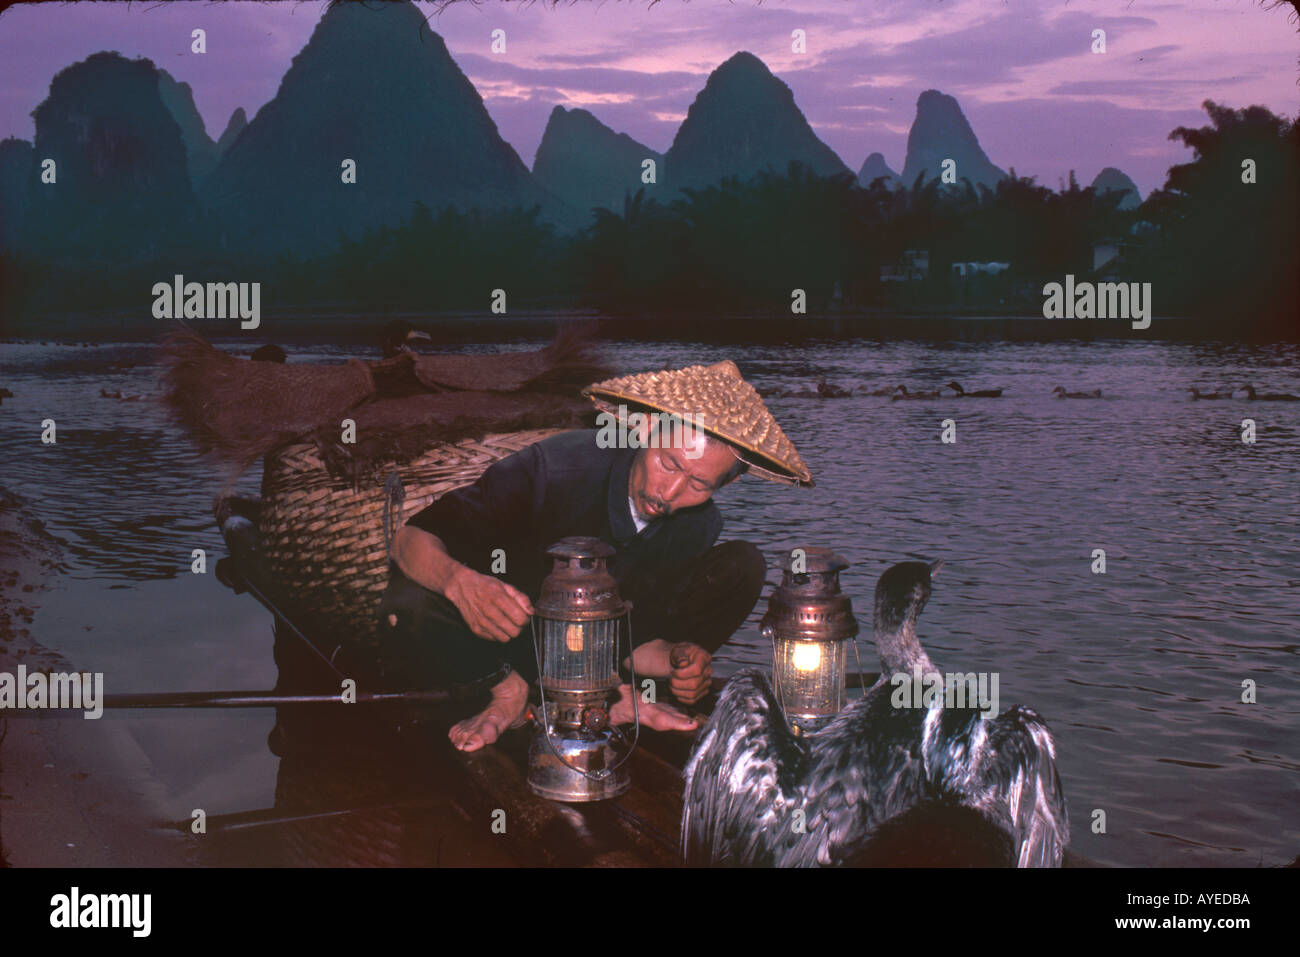 Fisherman night fishing with cormorants on bamboo raft on Li River Guangxi Province China Stock Photo